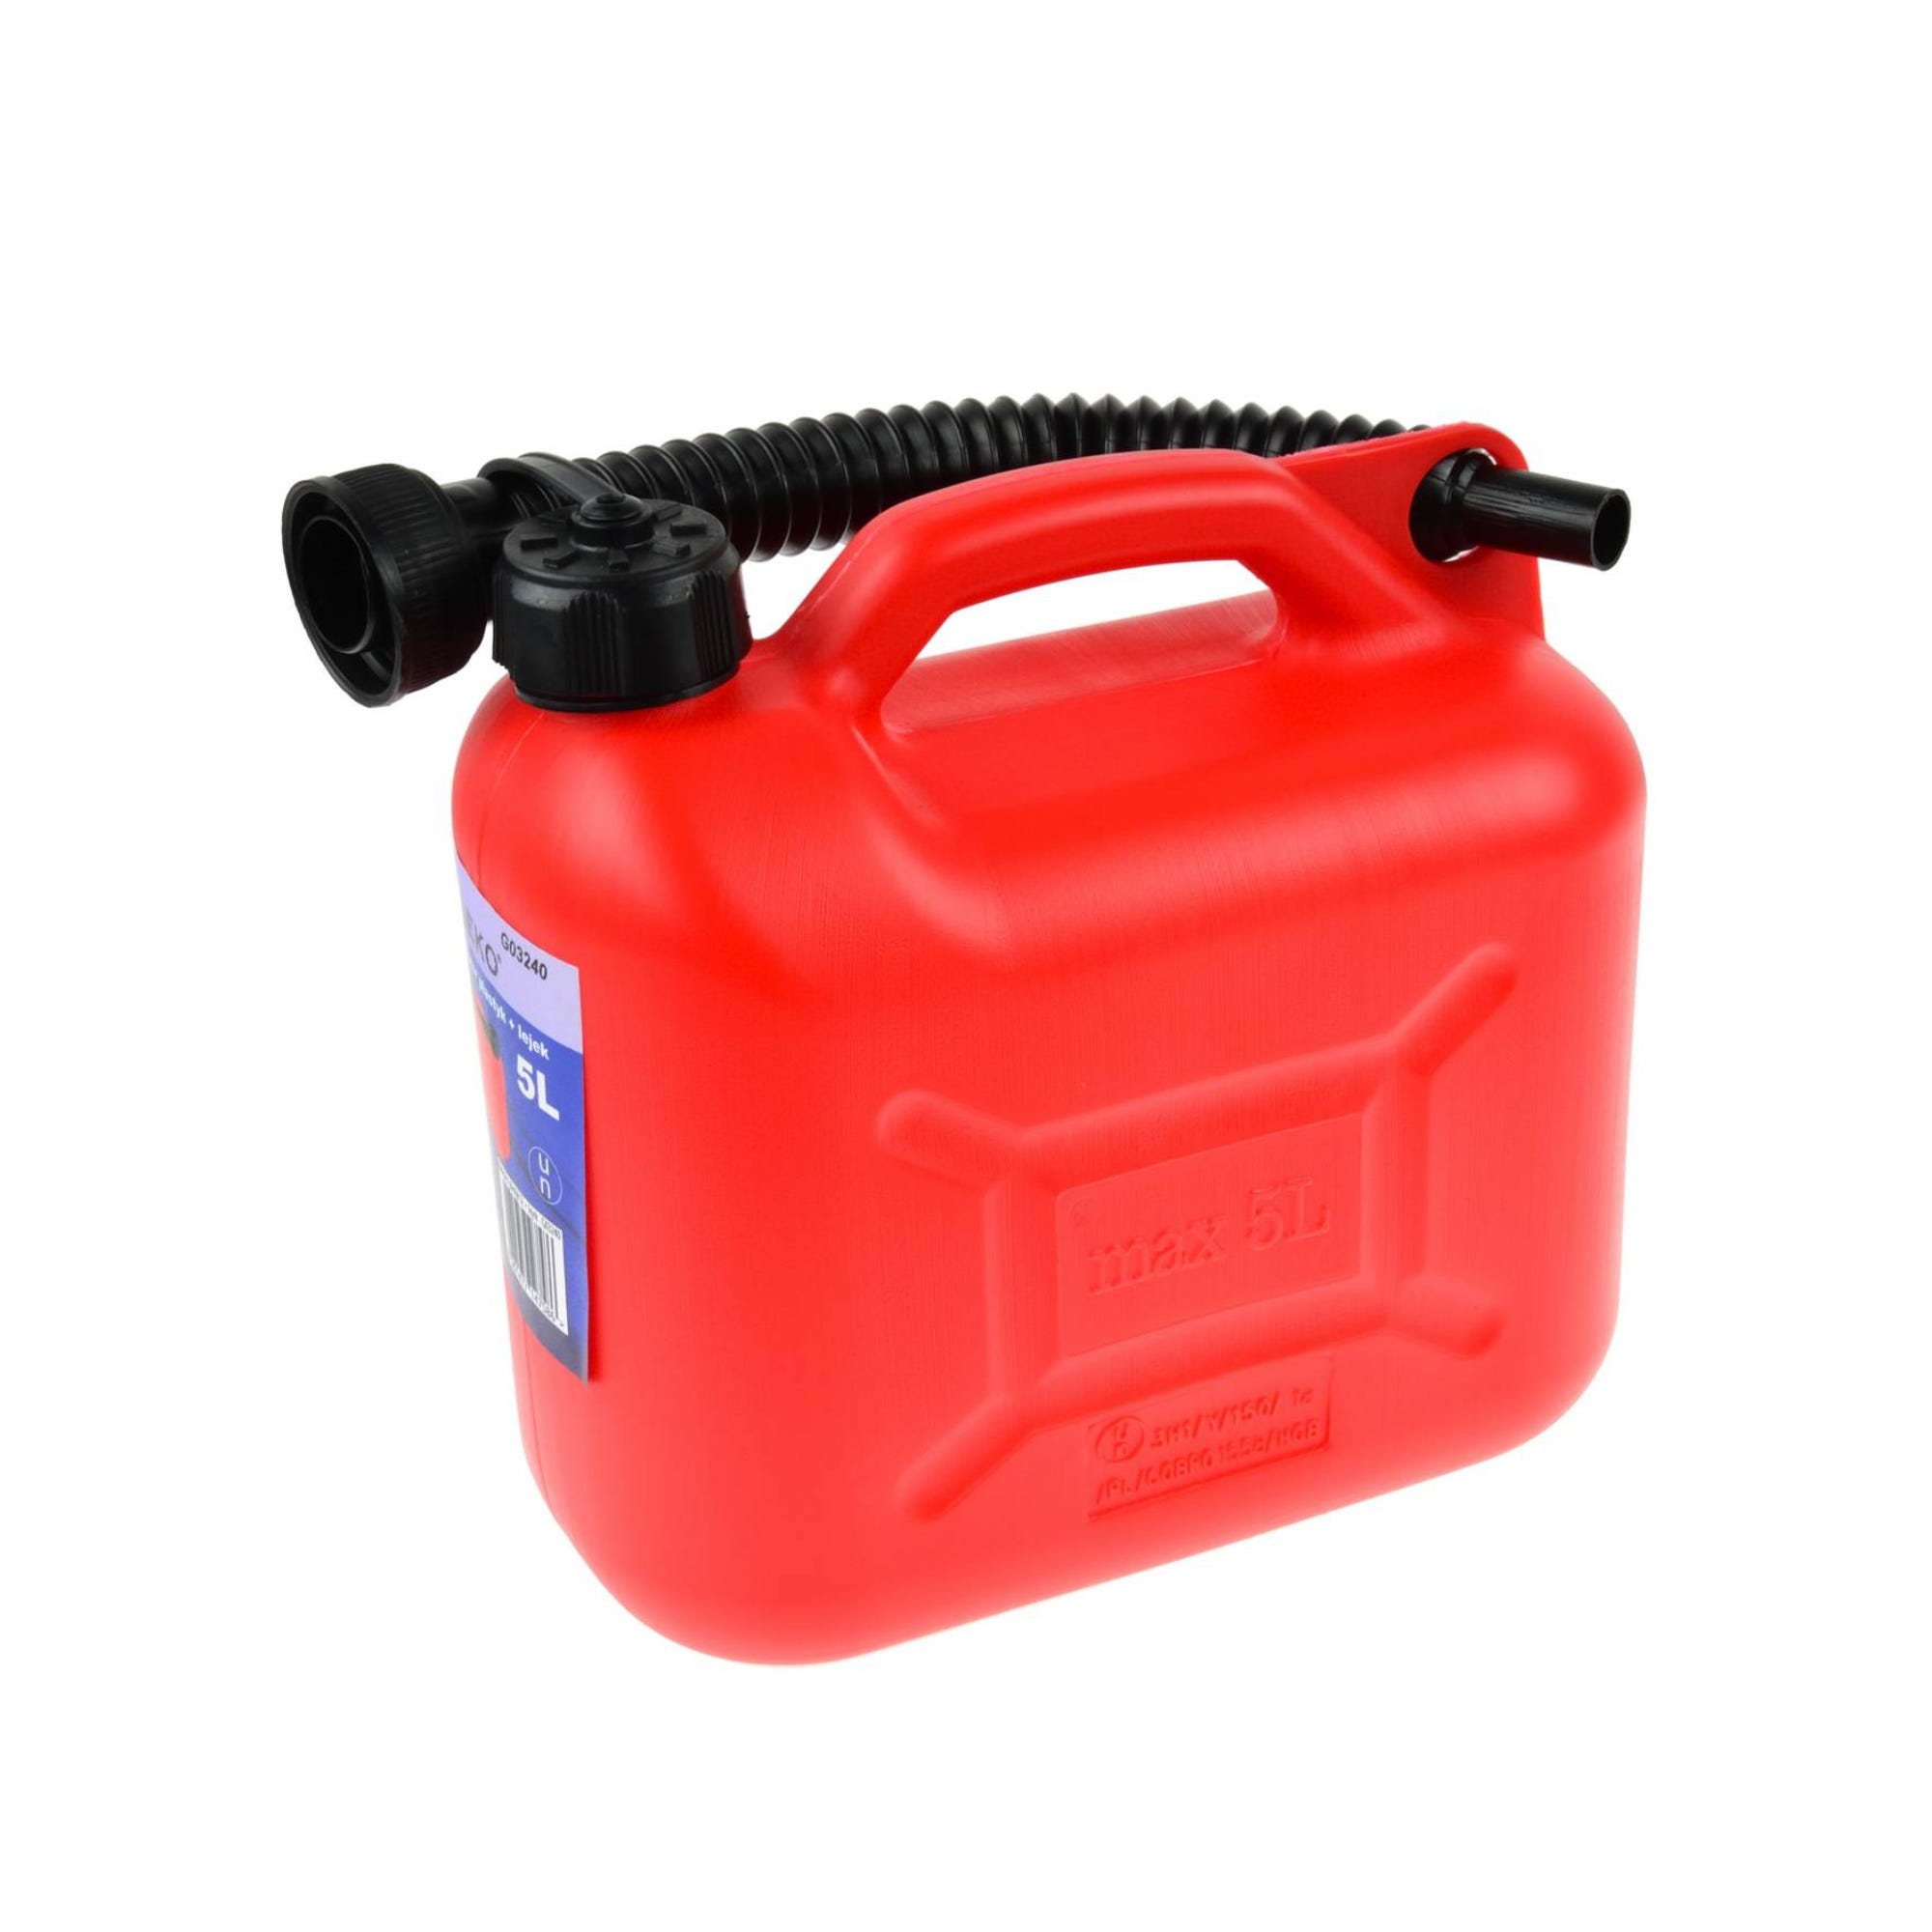 Jerrican carburant en plastique rouge 5 L XLTech - Norauto